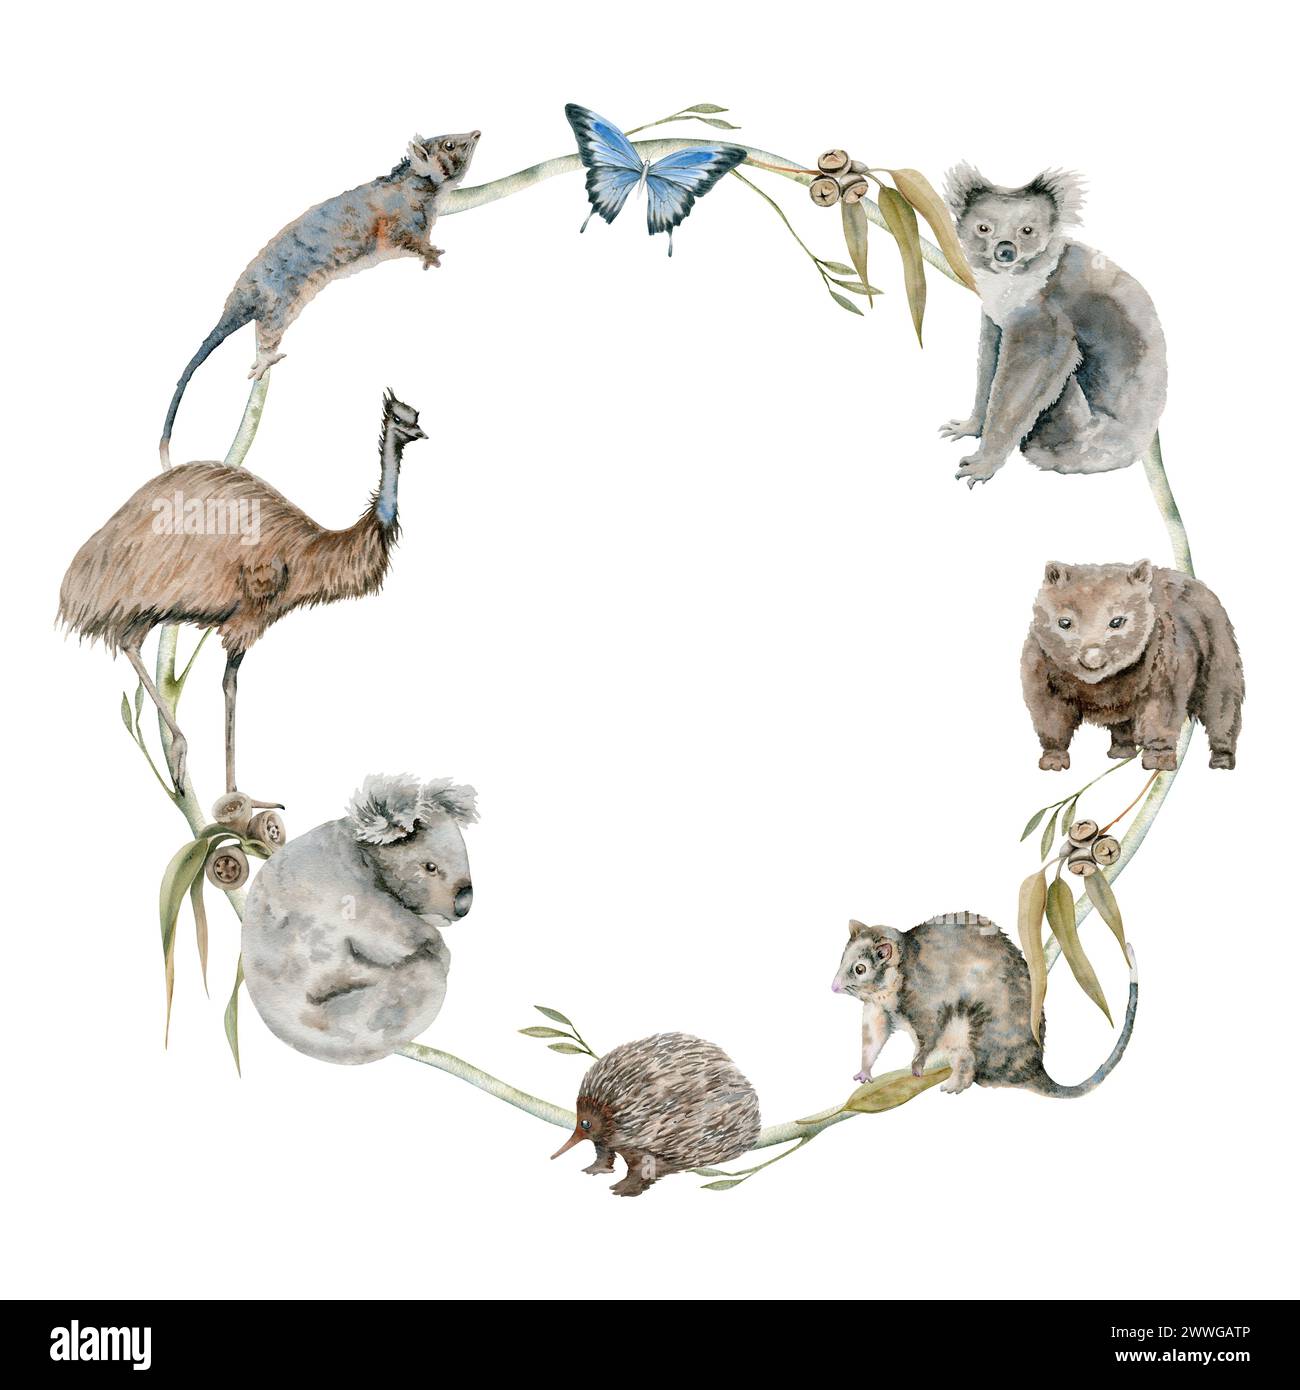 Koala australiano e animali nativo di wombat incorniciano la corona rotonda. Illustrazione isolata ad acquerello con struzzo emu, opossum ed echidna disegnati a mano Foto Stock